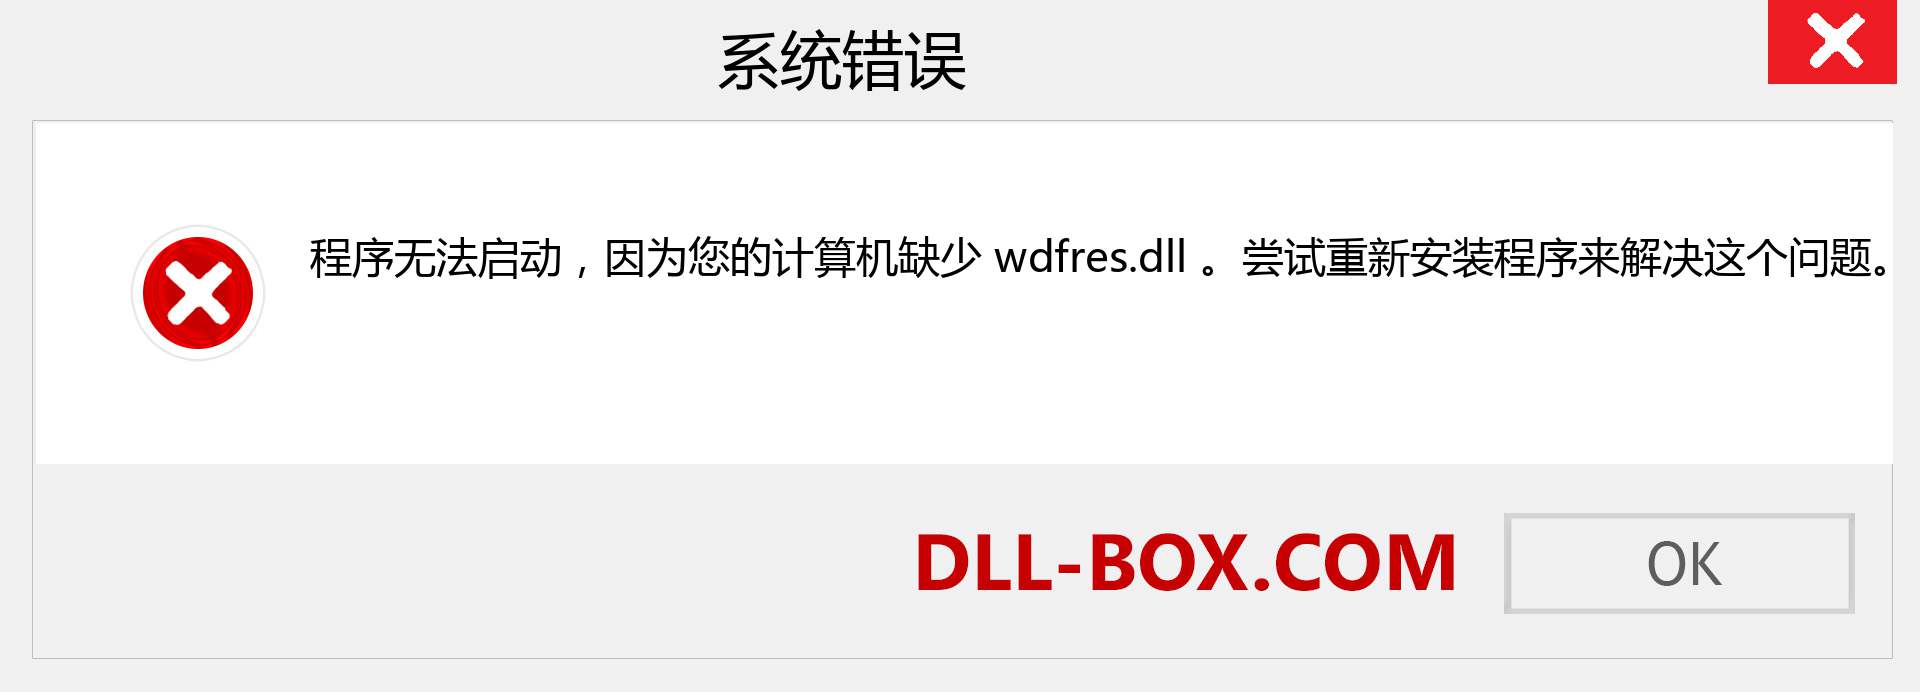 wdfres.dll 文件丢失？。 适用于 Windows 7、8、10 的下载 - 修复 Windows、照片、图像上的 wdfres dll 丢失错误